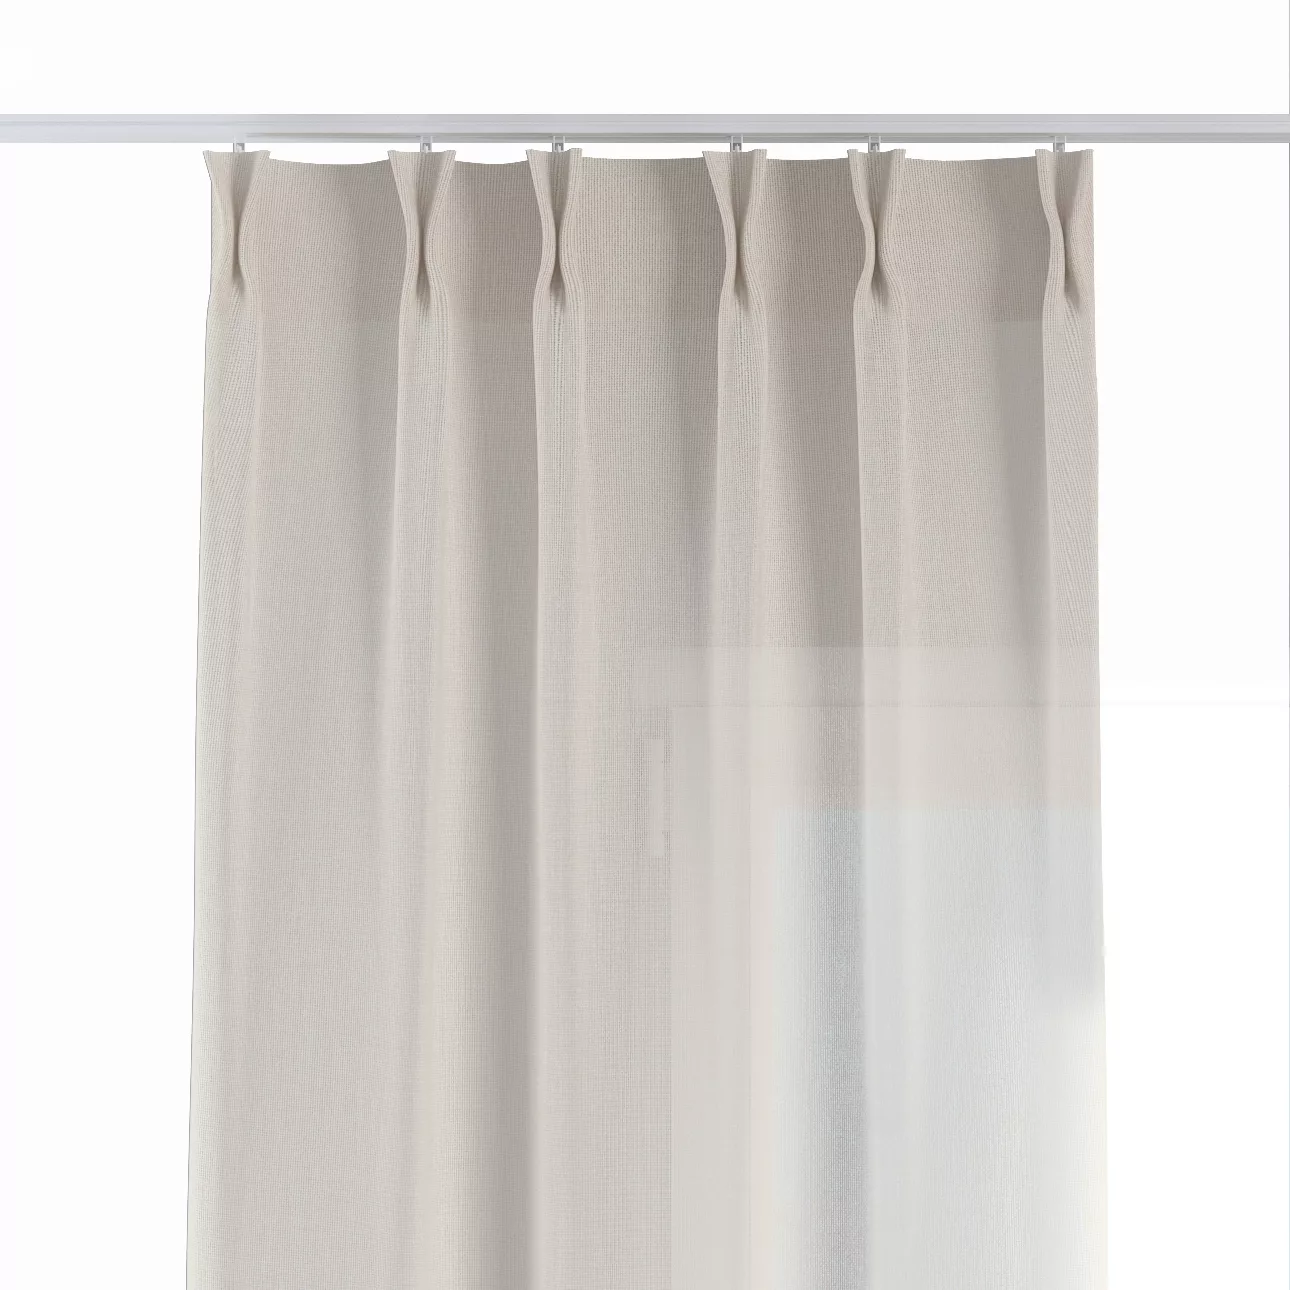 Vorhang mit flämischen 2-er Falten, creme, Sensual Premium (144-42) günstig online kaufen